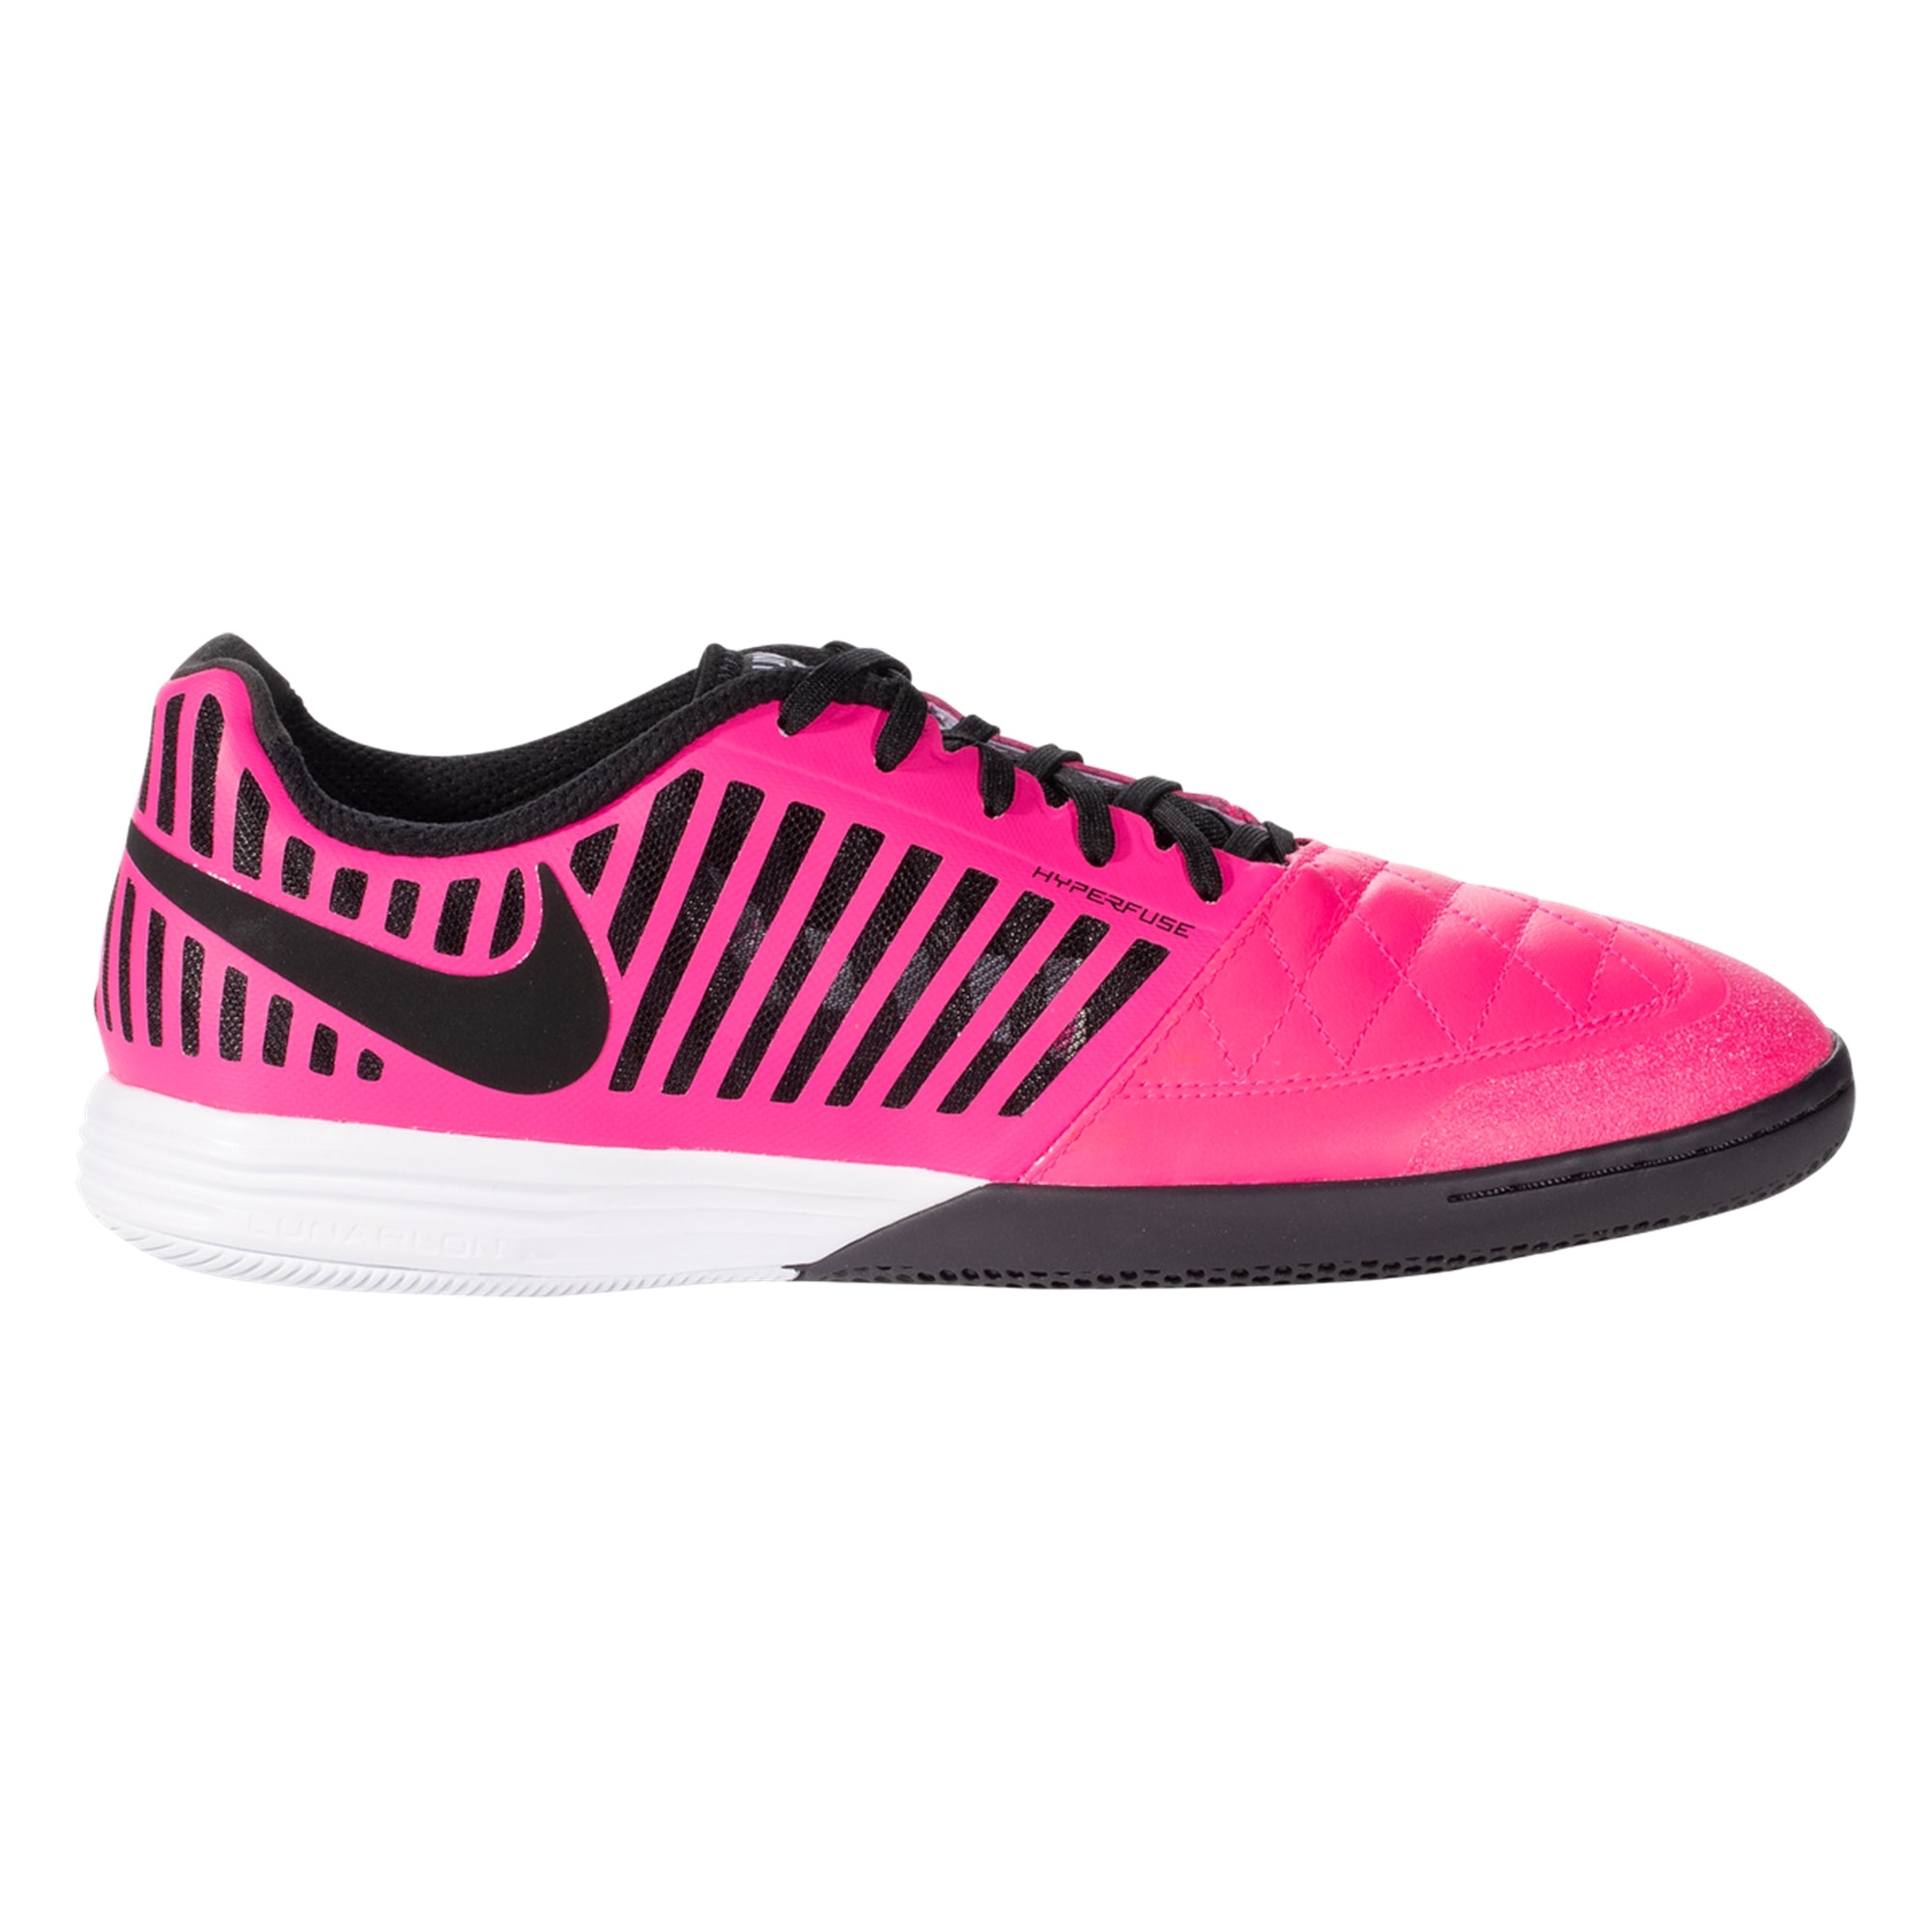 Lunargato II Indoor Soccer Shoes- 580456-605 – USA